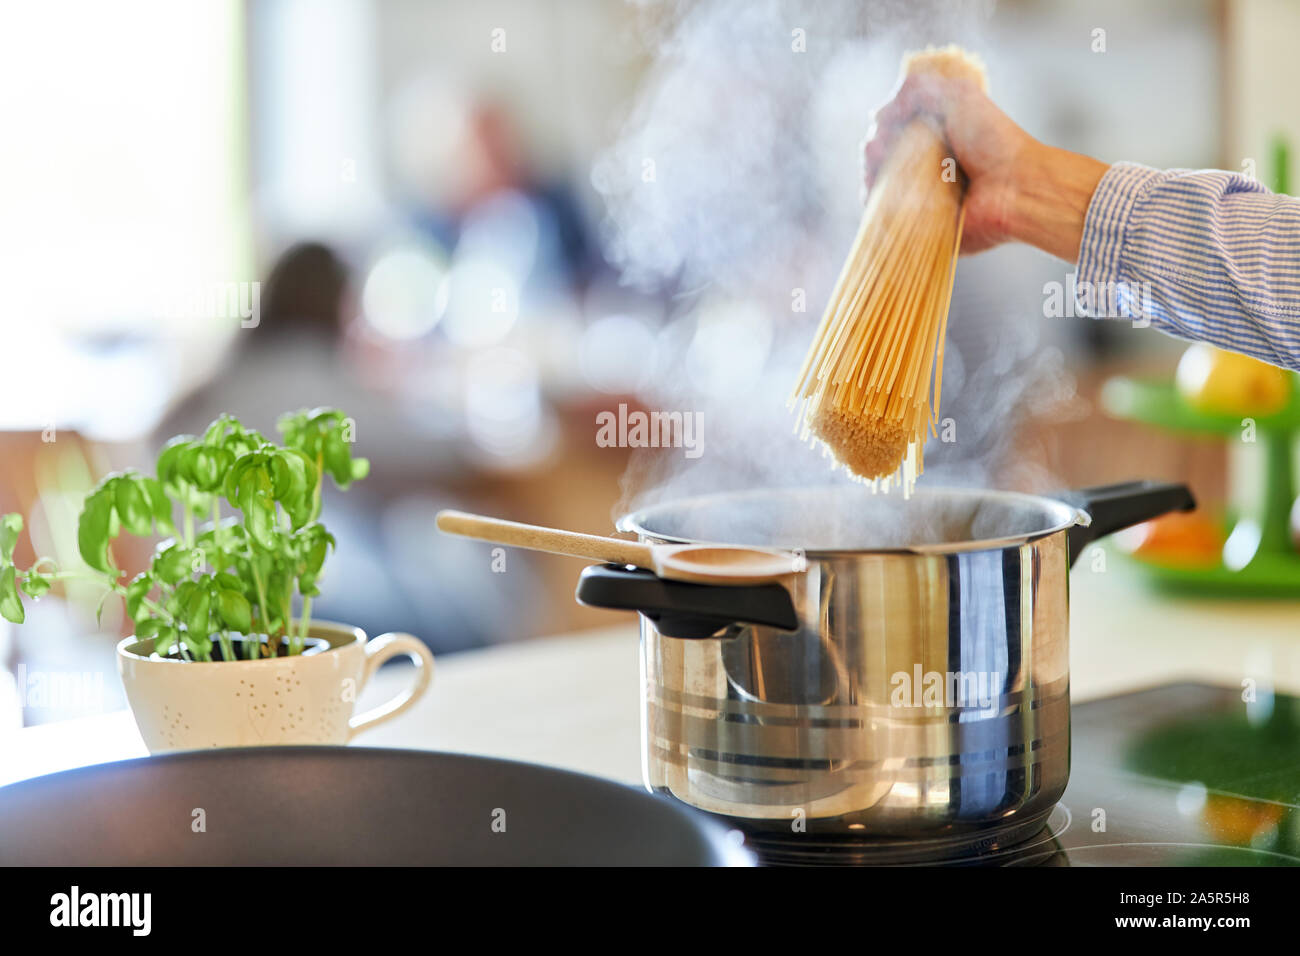 Main de cuisinier ou cuisinier holding tank sur la casserole d'eau bouillante Banque D'Images